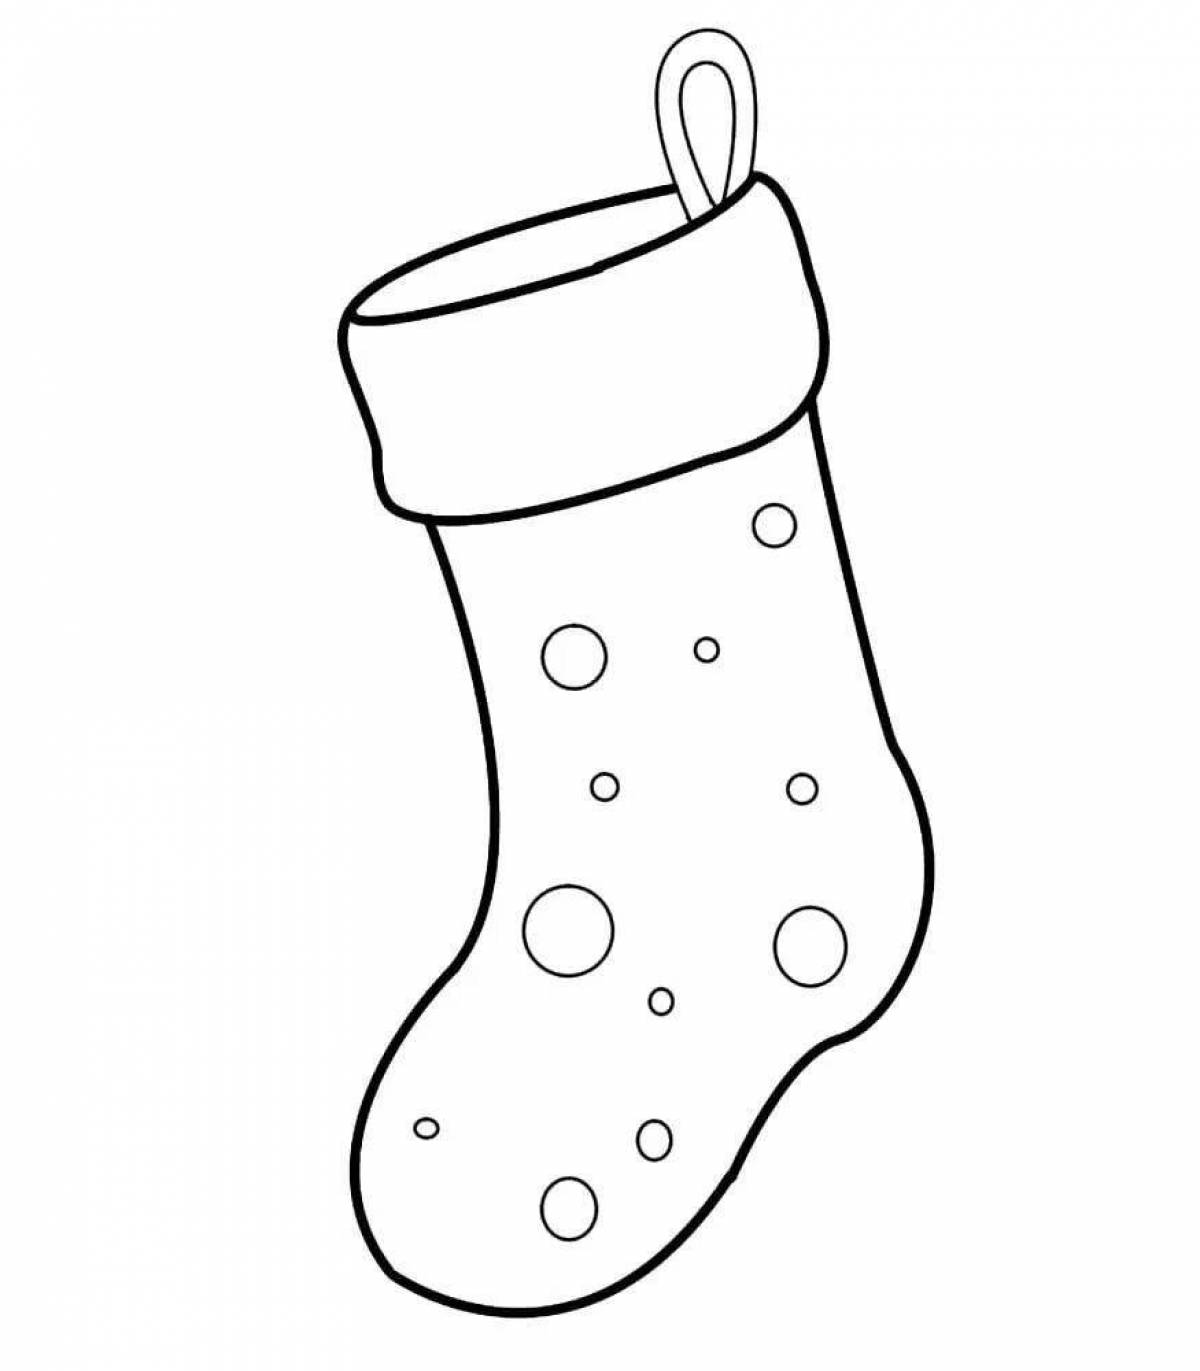 Рождественский носок для подарков h-42см